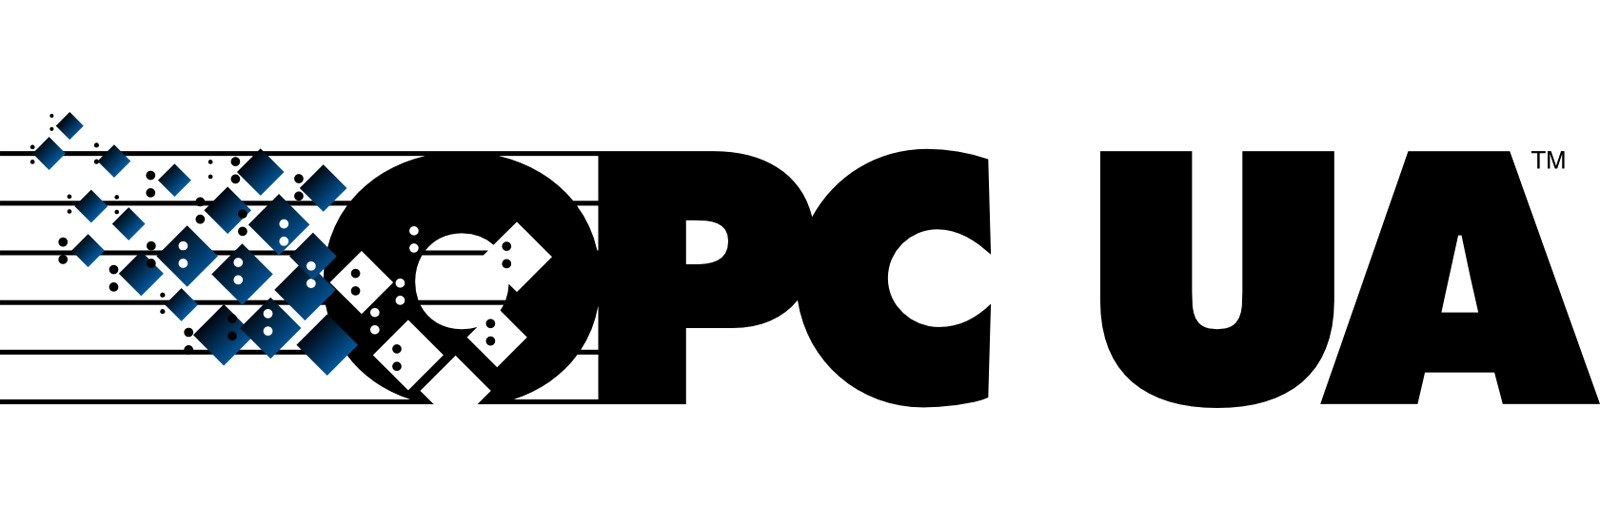 https://www.systerel.fr/wp-content/uploads/2019/03/logo_OPC_UA.jpg